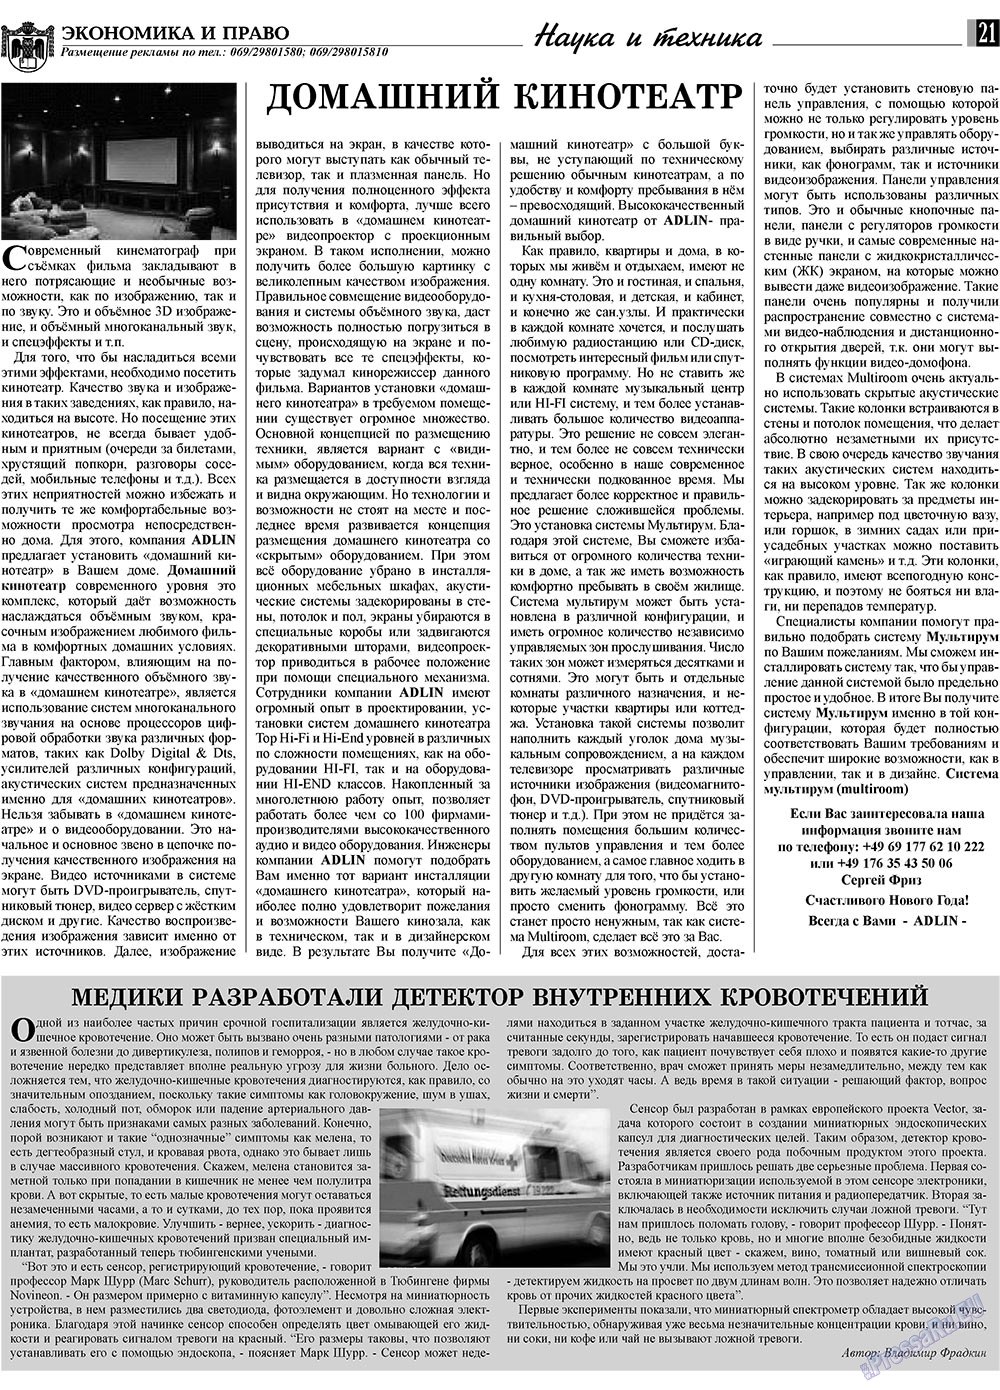 Экономика и право, газета. 2010 №1 стр.21